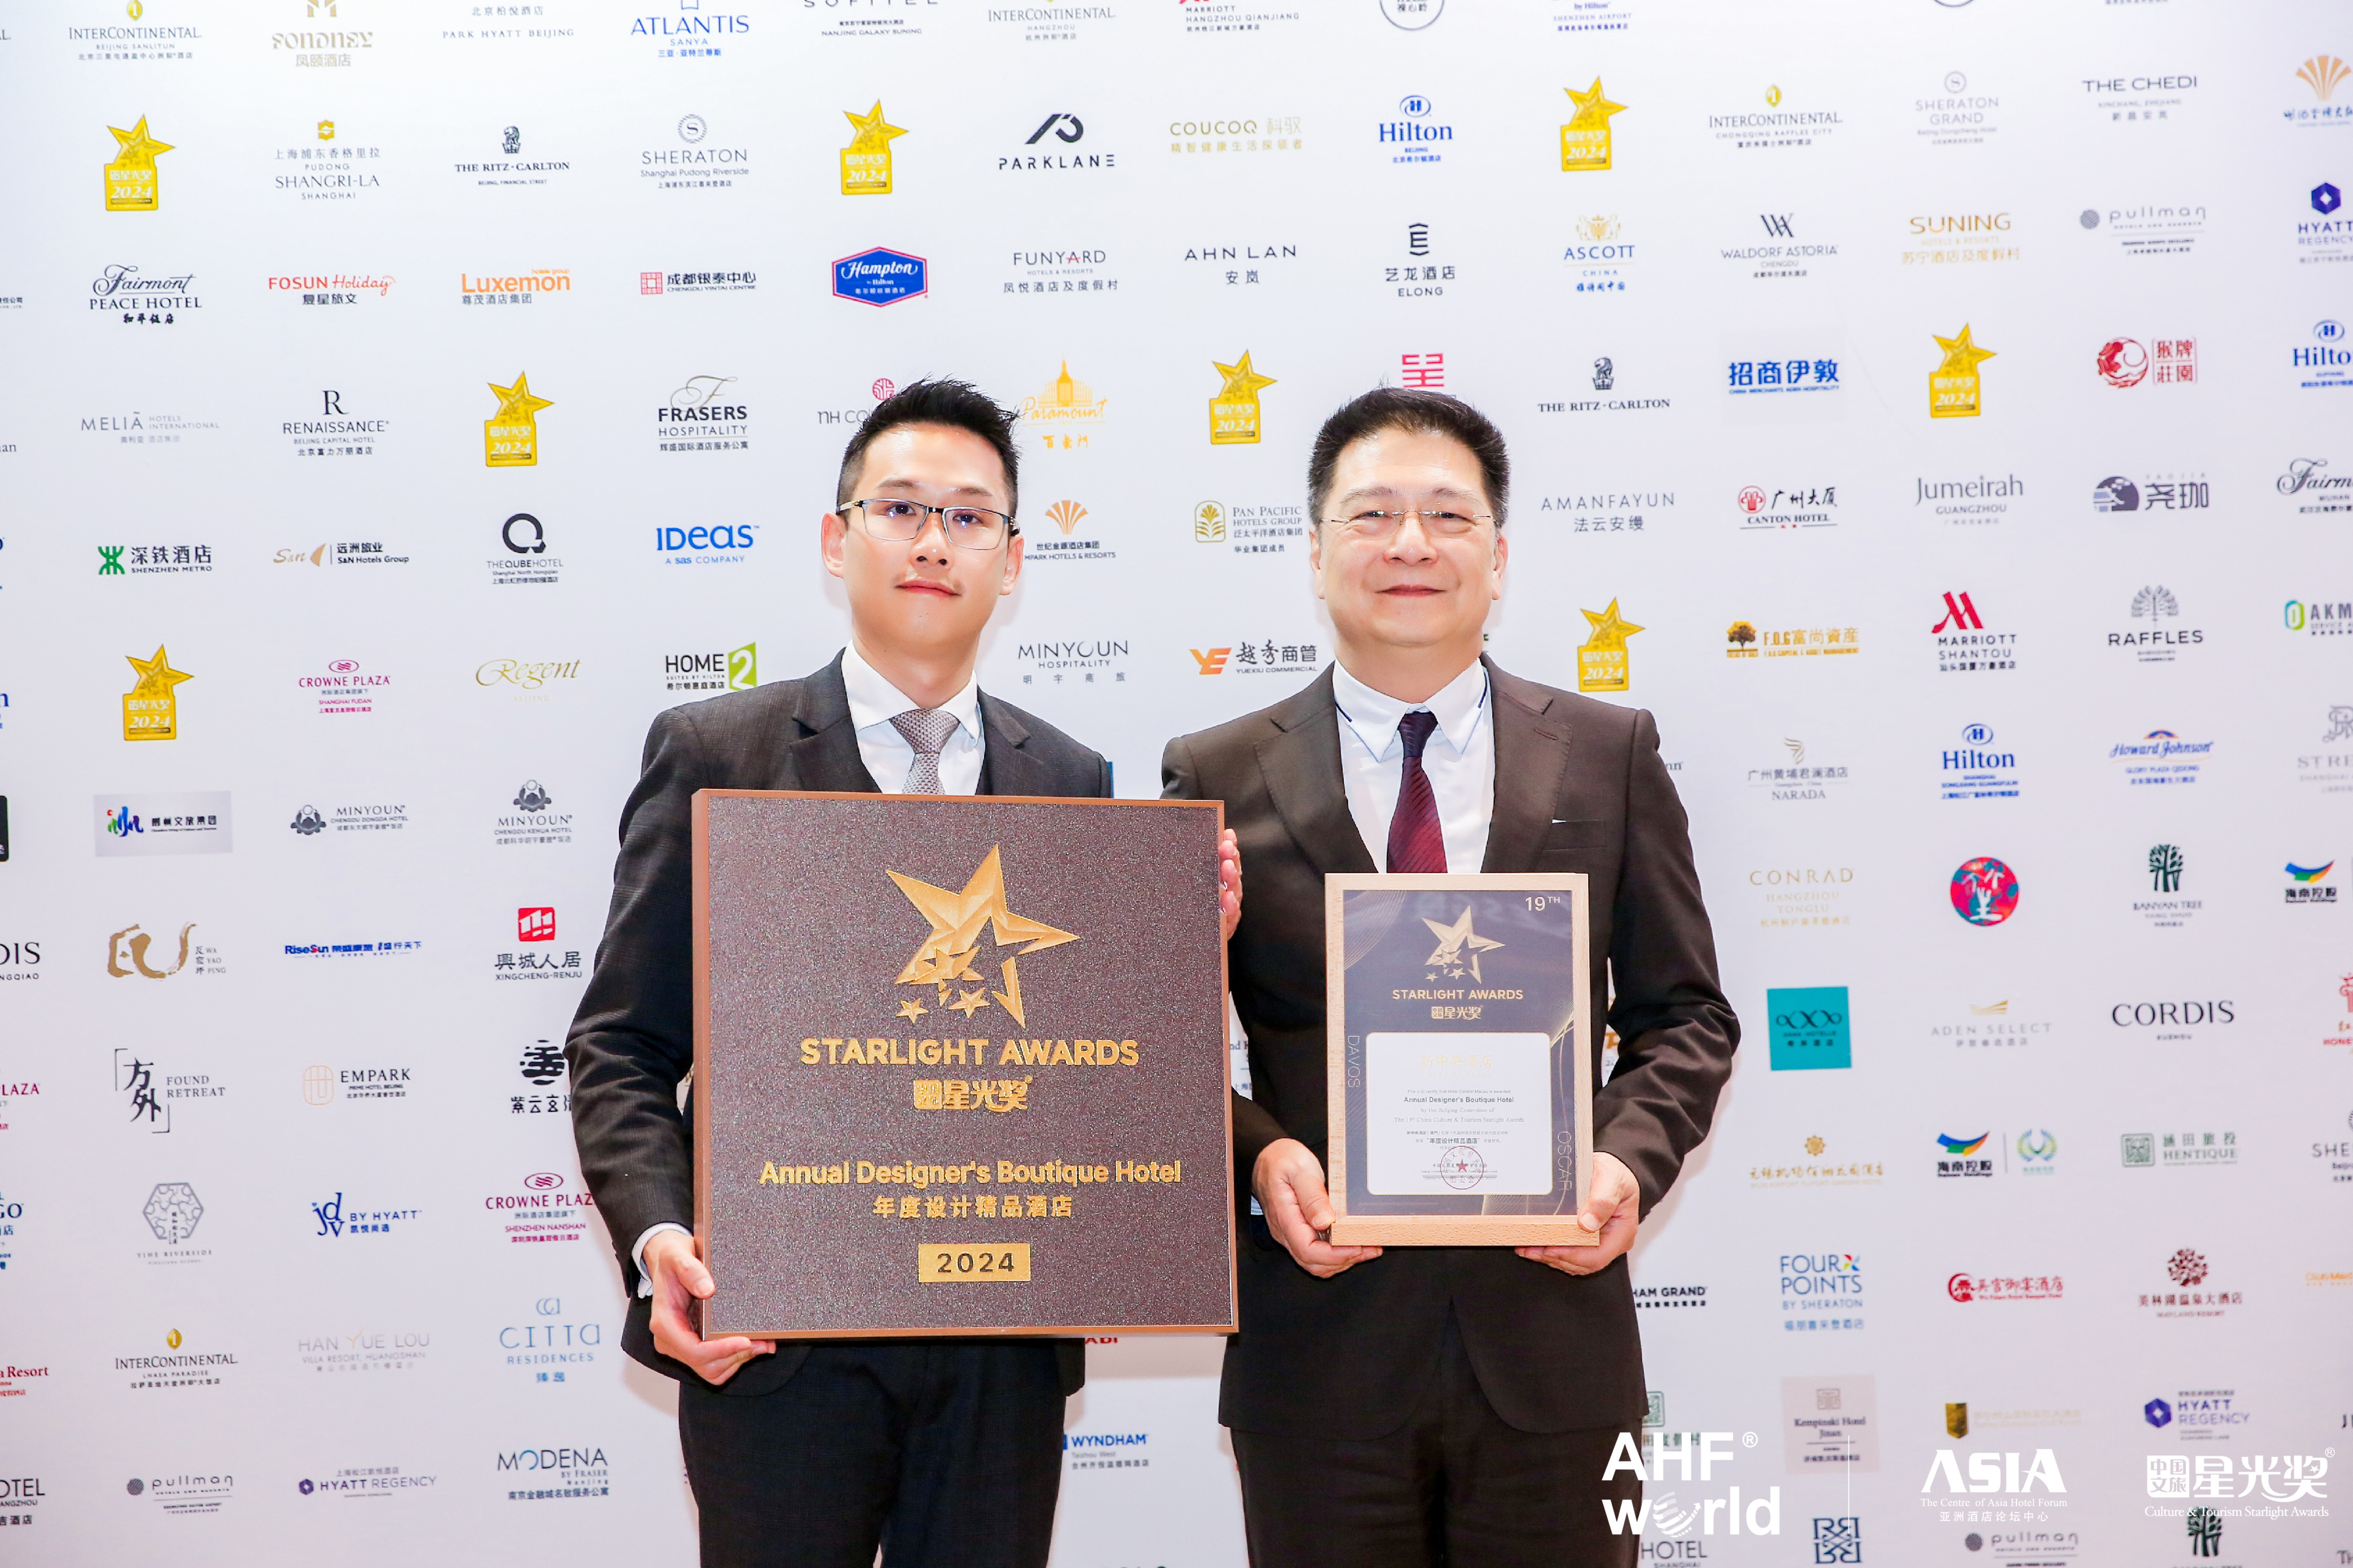 力行集團主席蕭頌銘(右)代表新中央酒店接受獎項